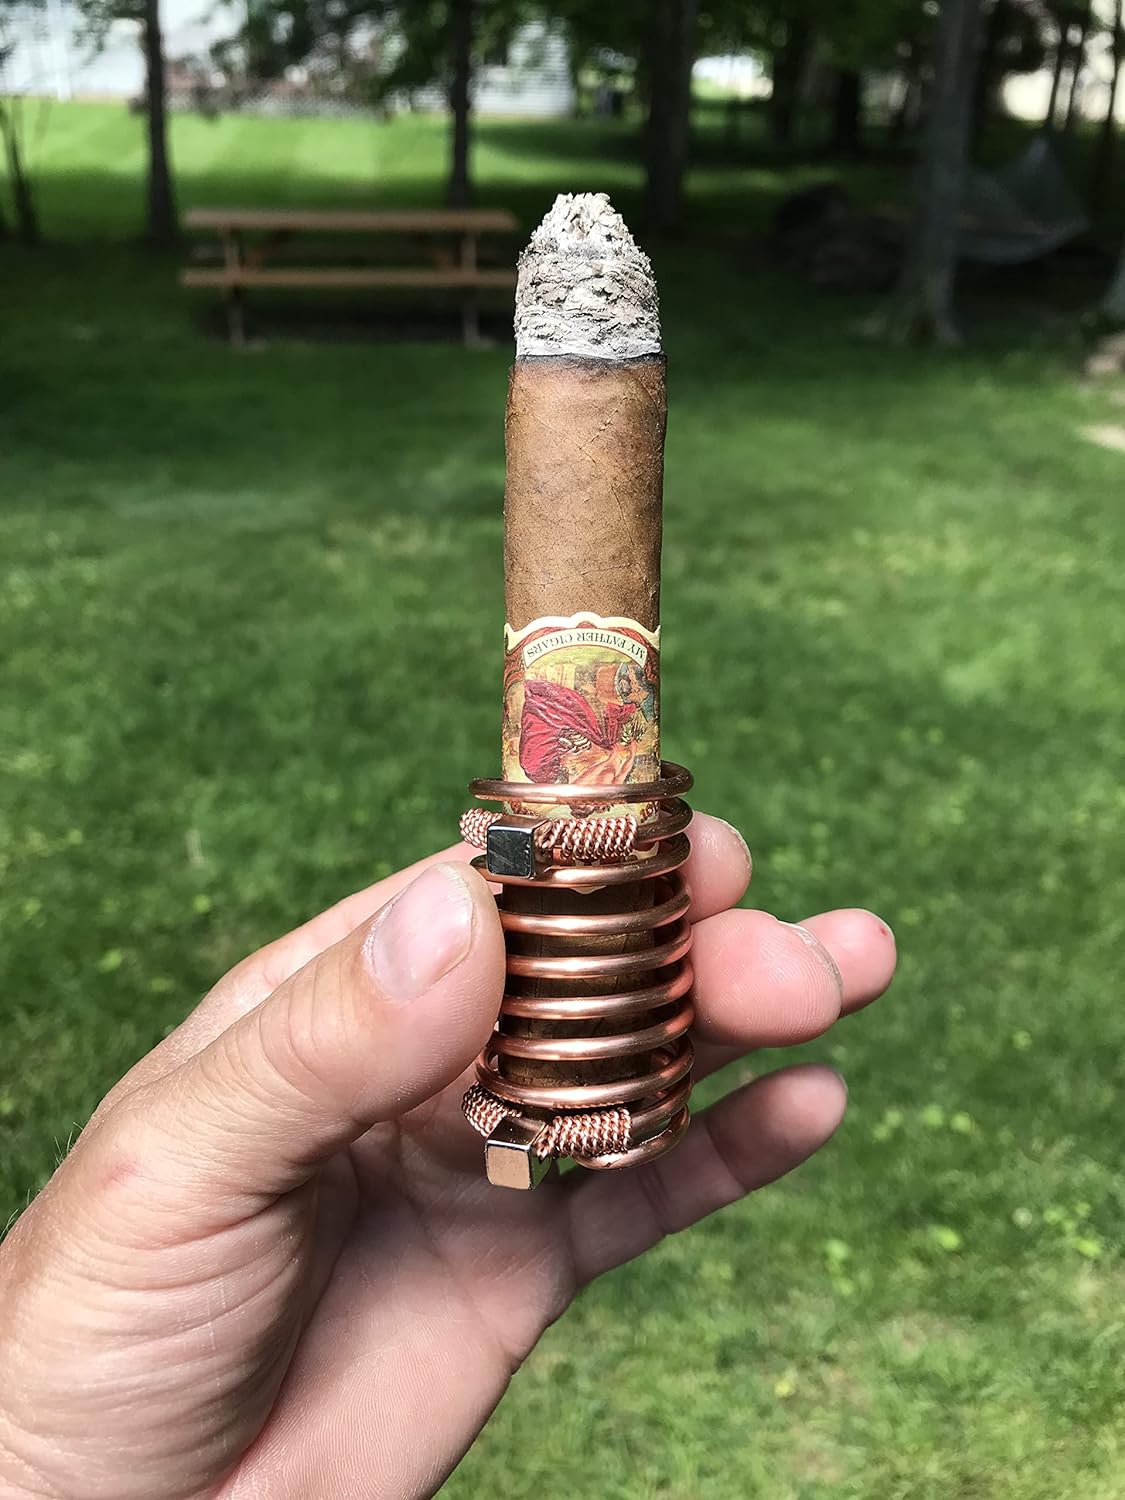 Cigar Holder for Golf Cart - Handmade Copper